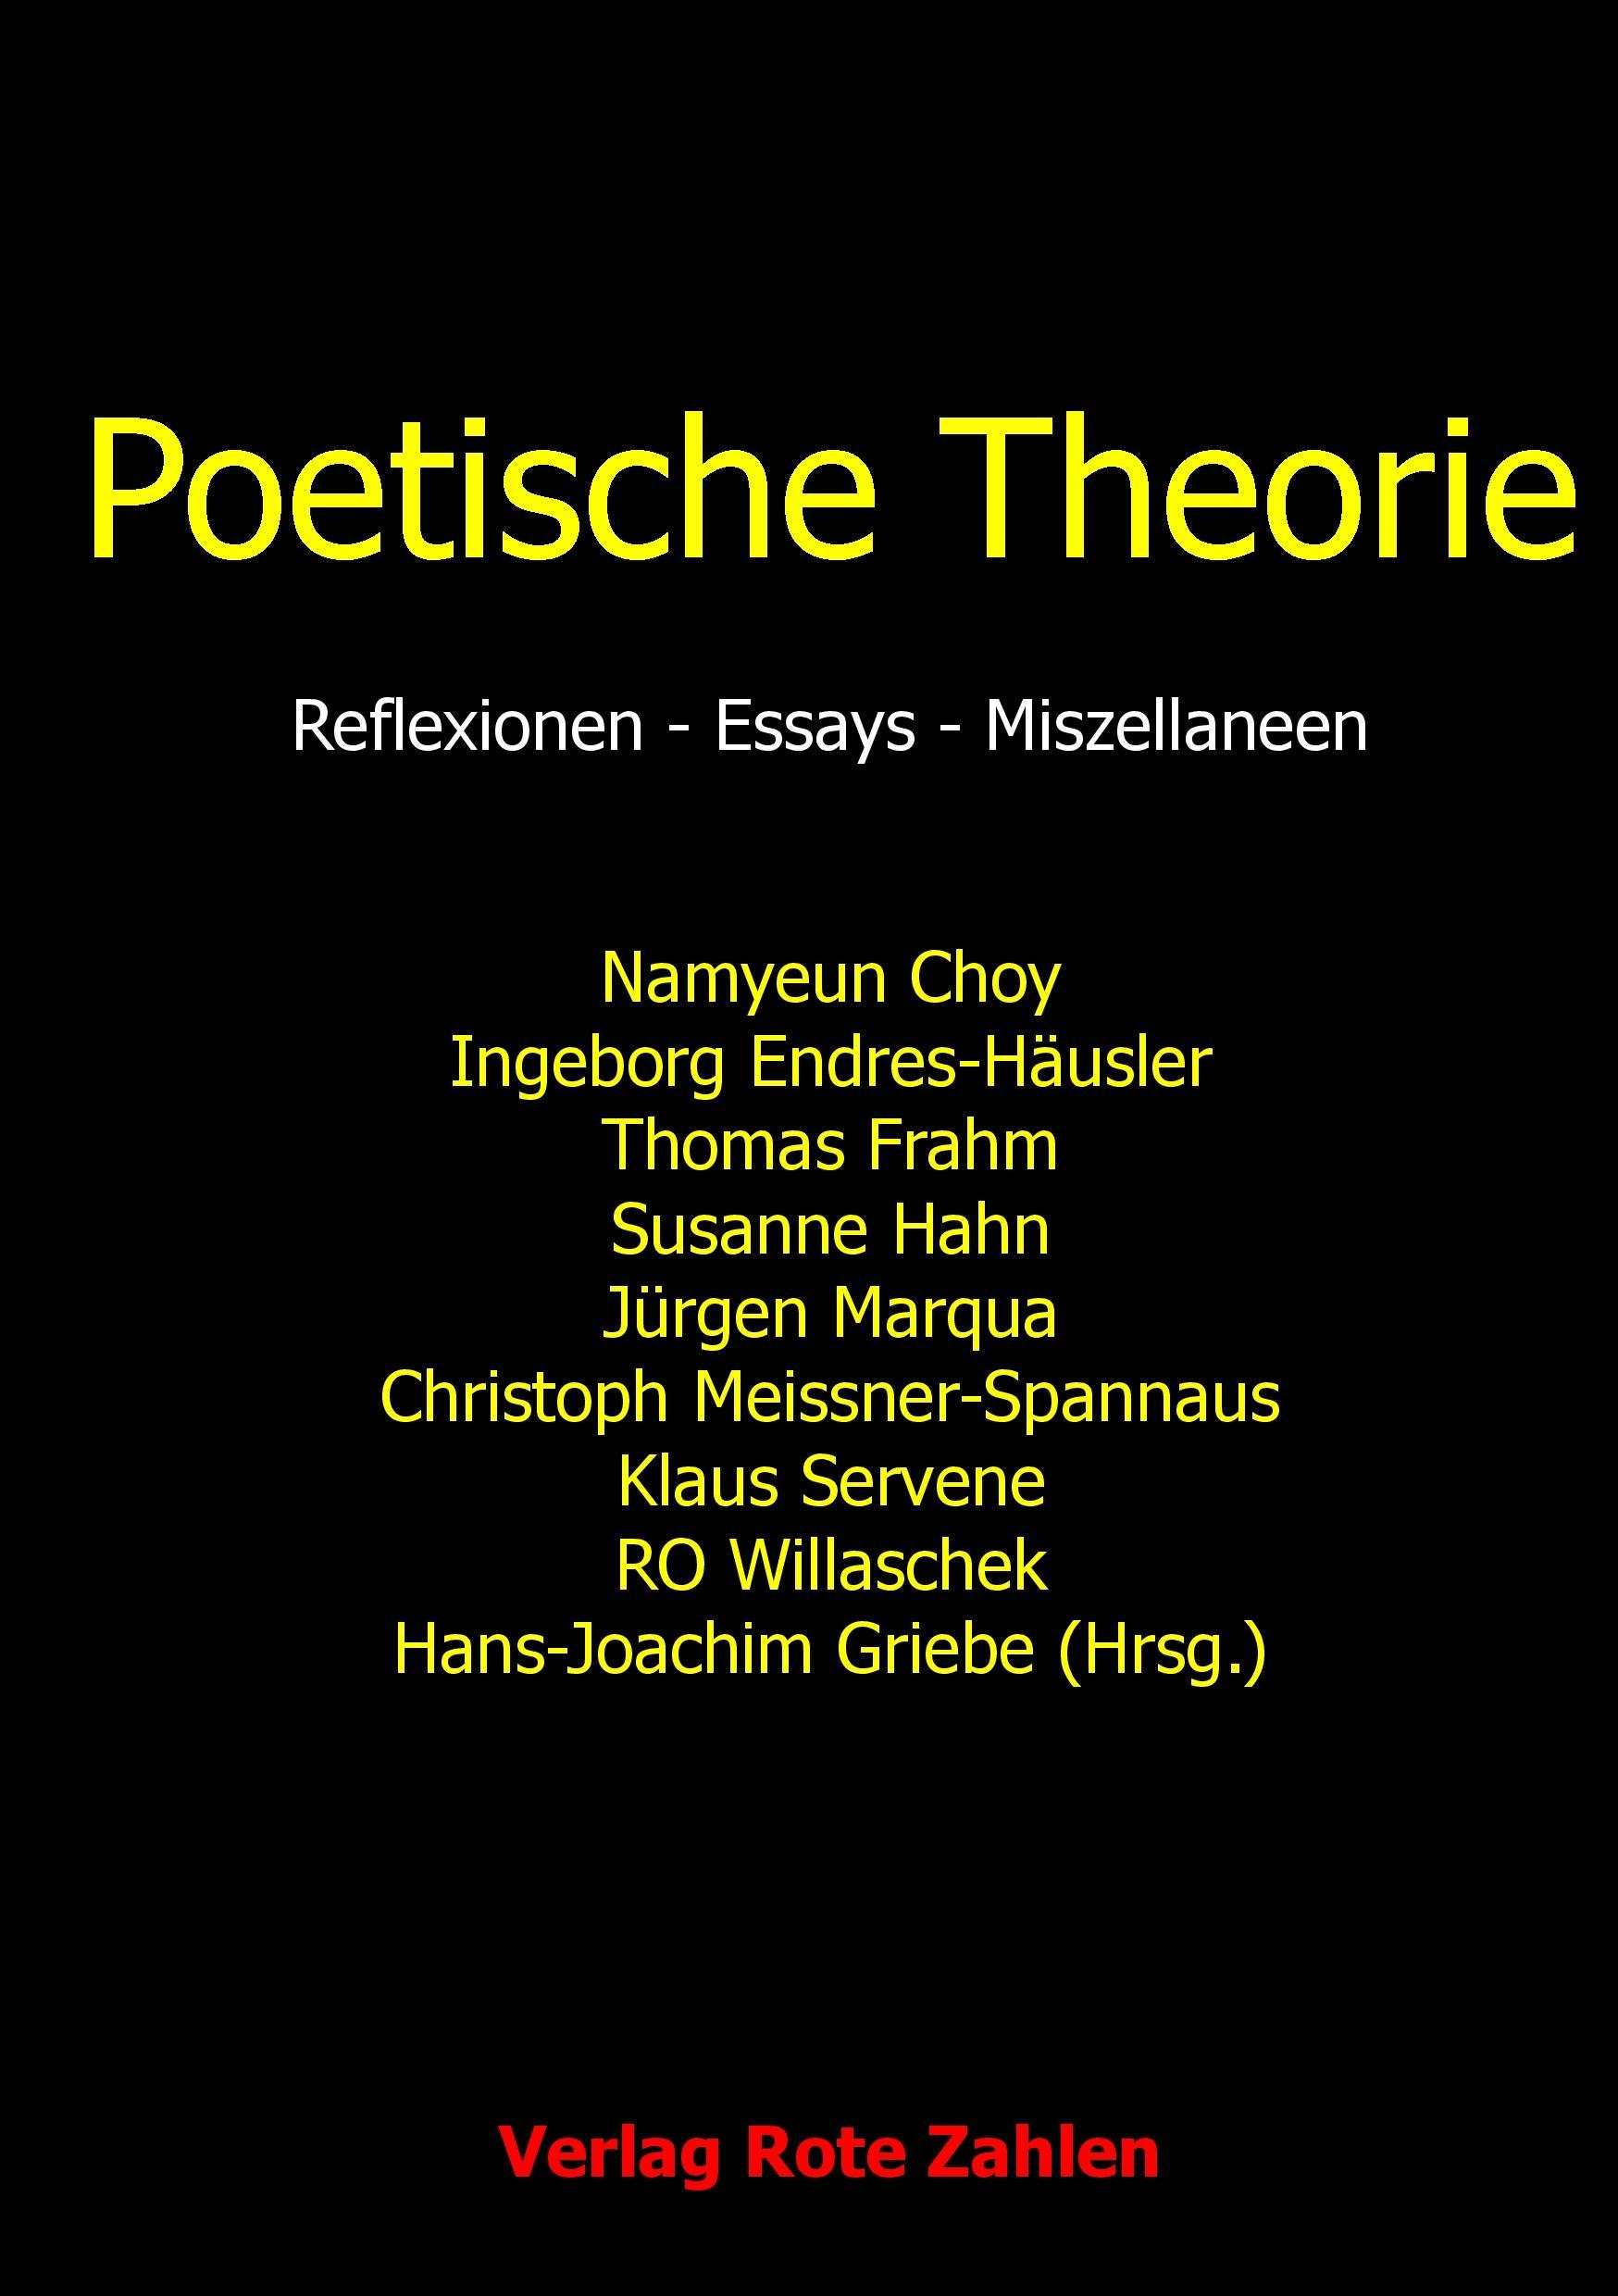 Poetische Theorie - Frahm, Thomas|Griebe, Hans-Joachim|Willaschek, Ro